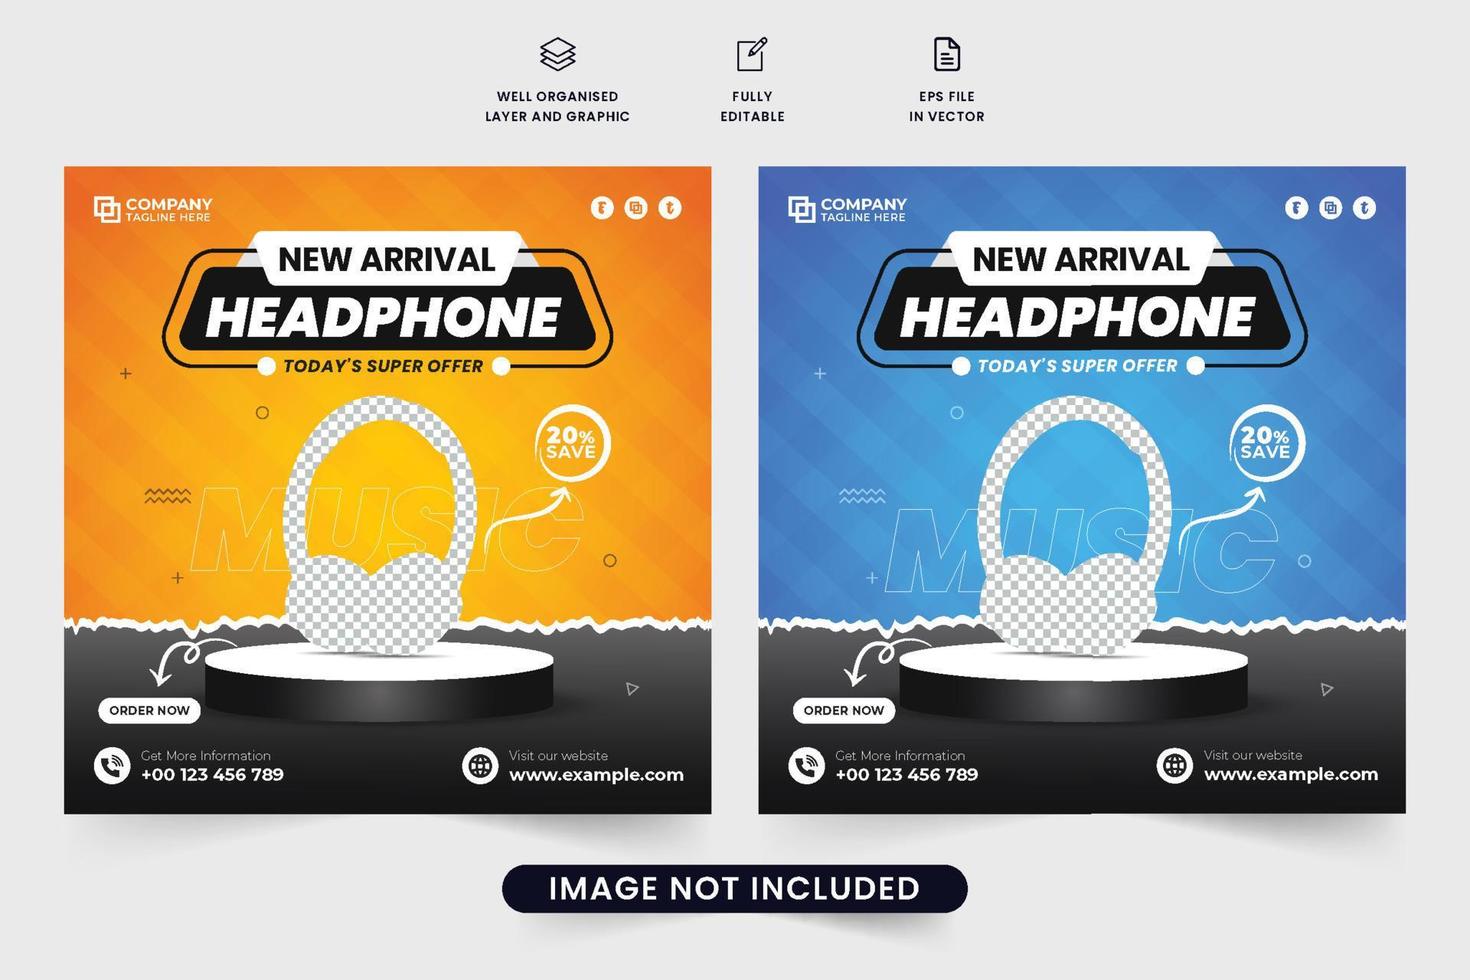 Werbe-Web-Banner-Vektor für moderne Kopfhörer mit orangen und blauen Farben. Design von drahtlosen Kopfhörervorlagen für Social Media Marketing. Kopfhörer-Verkaufsplakatdesign mit abstrakten Formen. vektor